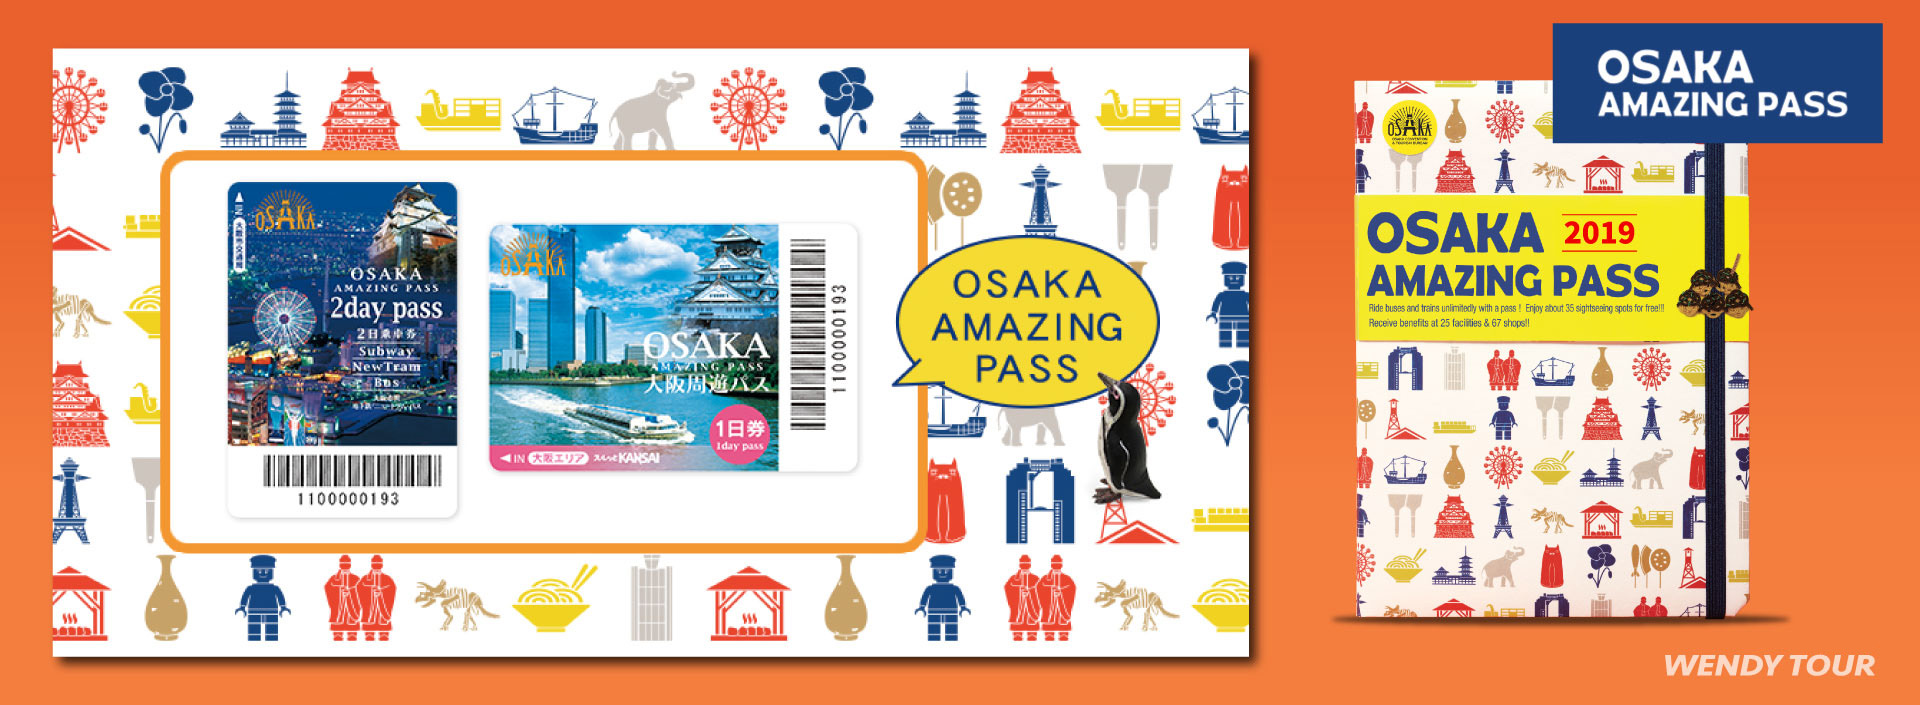 บัตร Osaka Amazing Pass 2019 ,ซื้อตั๋ว Osaka Amazing Pass, ตั๋วโอซาก้าอะเมซิ่งพาส, เที่ยวโอซาก้า, เที่ยวญี่ปุ่น, โปรญี่ปุ่น, โอซาก้าราคาถูก